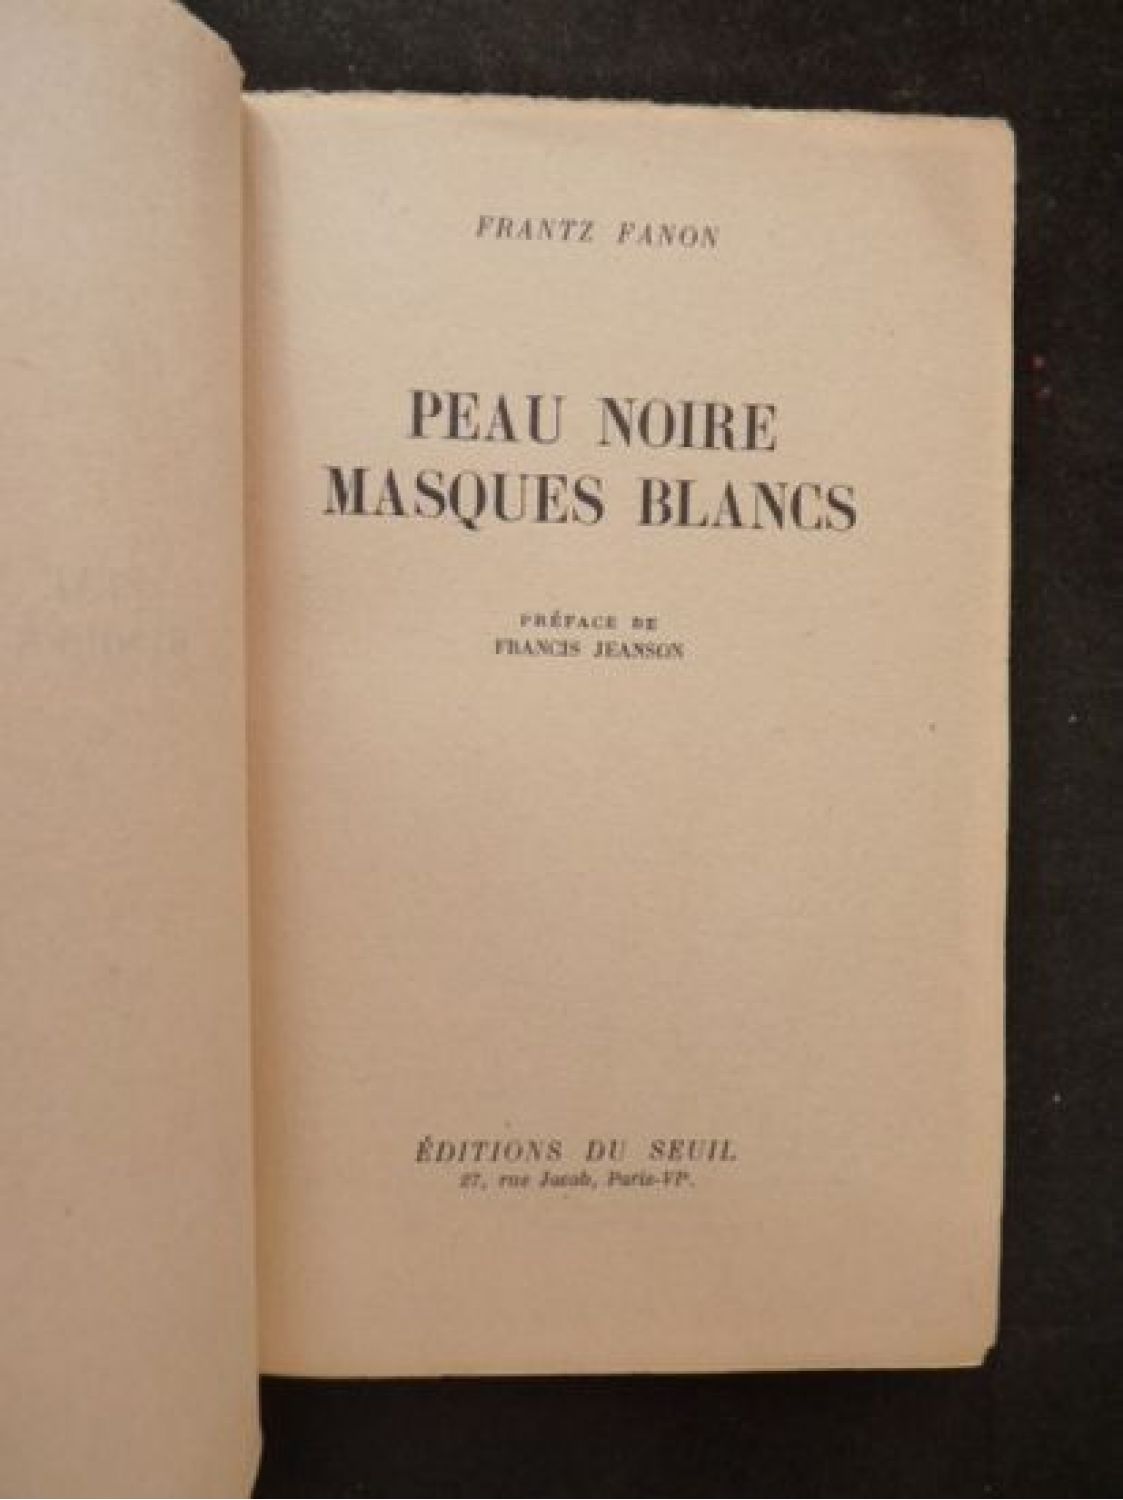 FANON : Peau noire et masques blancs - First edition 